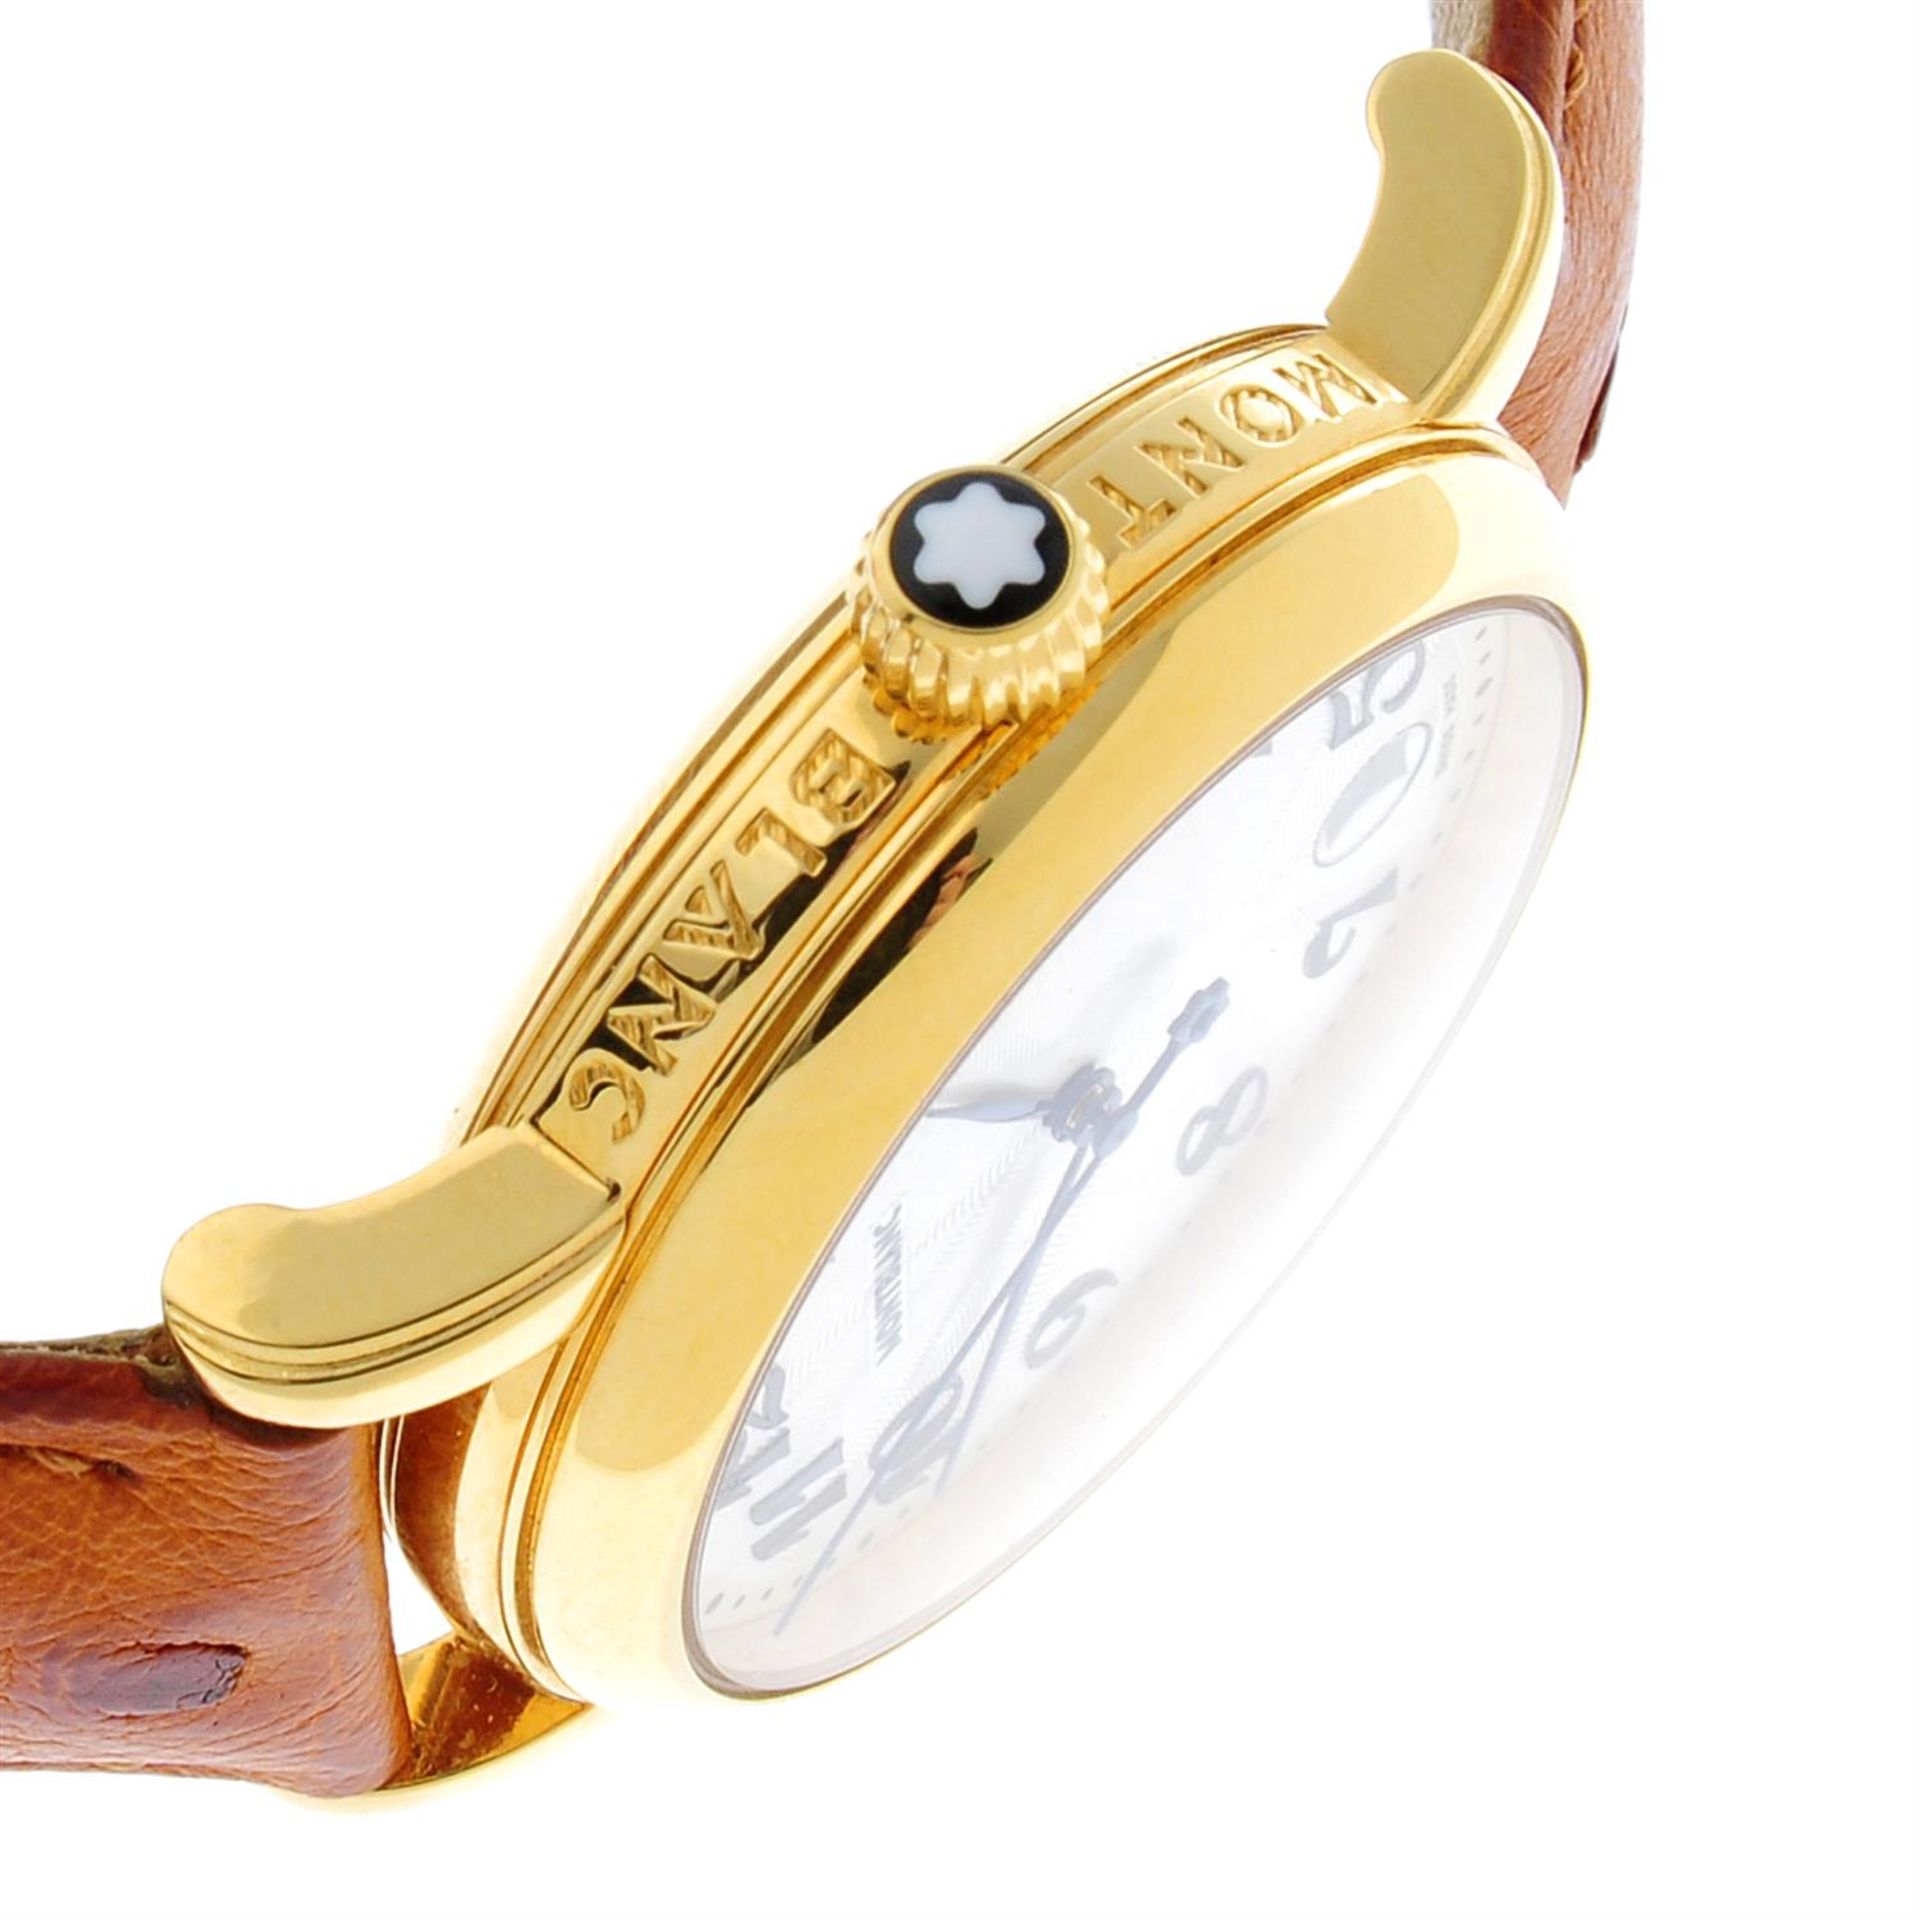 MONTBLANC - a gold plated Meisterstuck wrist watch, 35mm. - Bild 3 aus 4